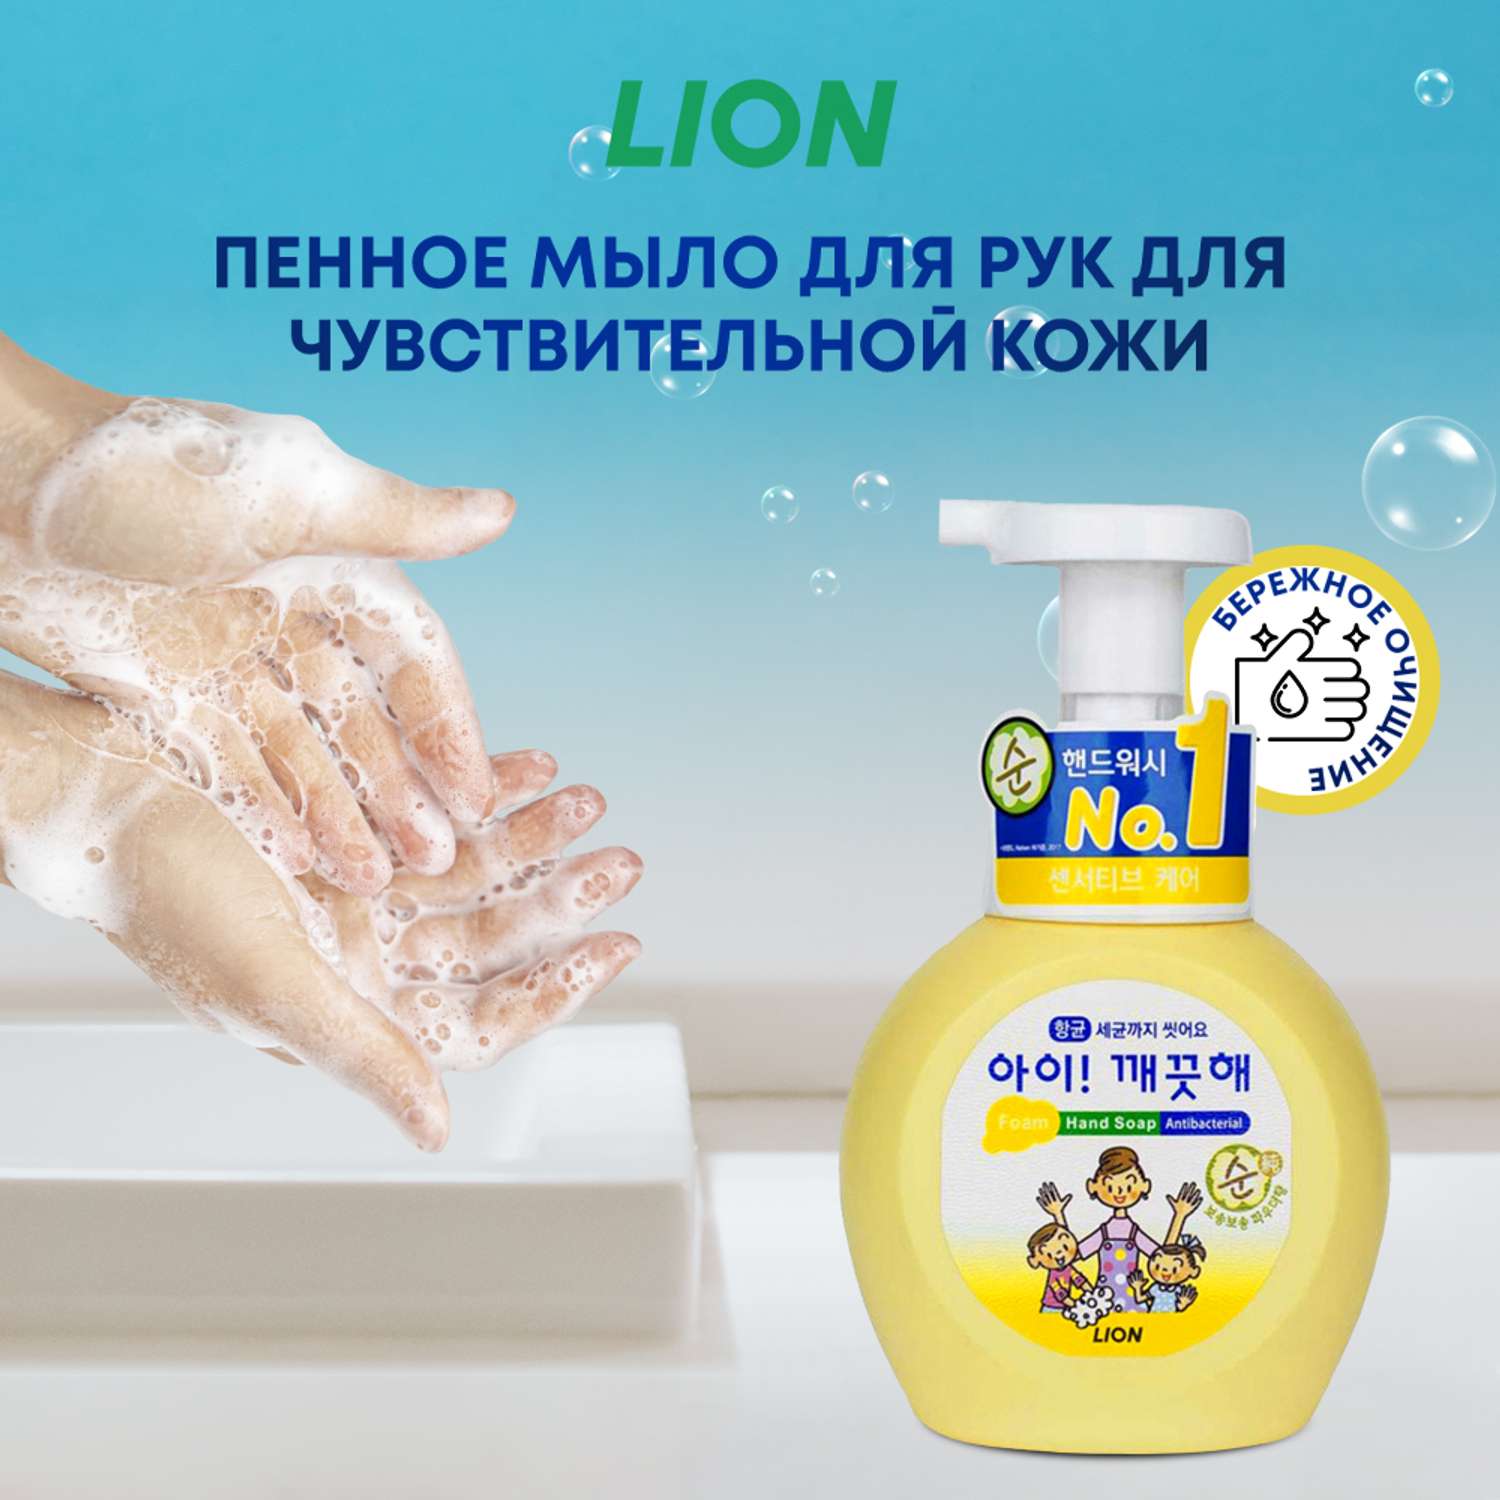 Мыло жидкое CJ LION пенное мыло для рук для чувствительной кожи 250 мл - фото 1